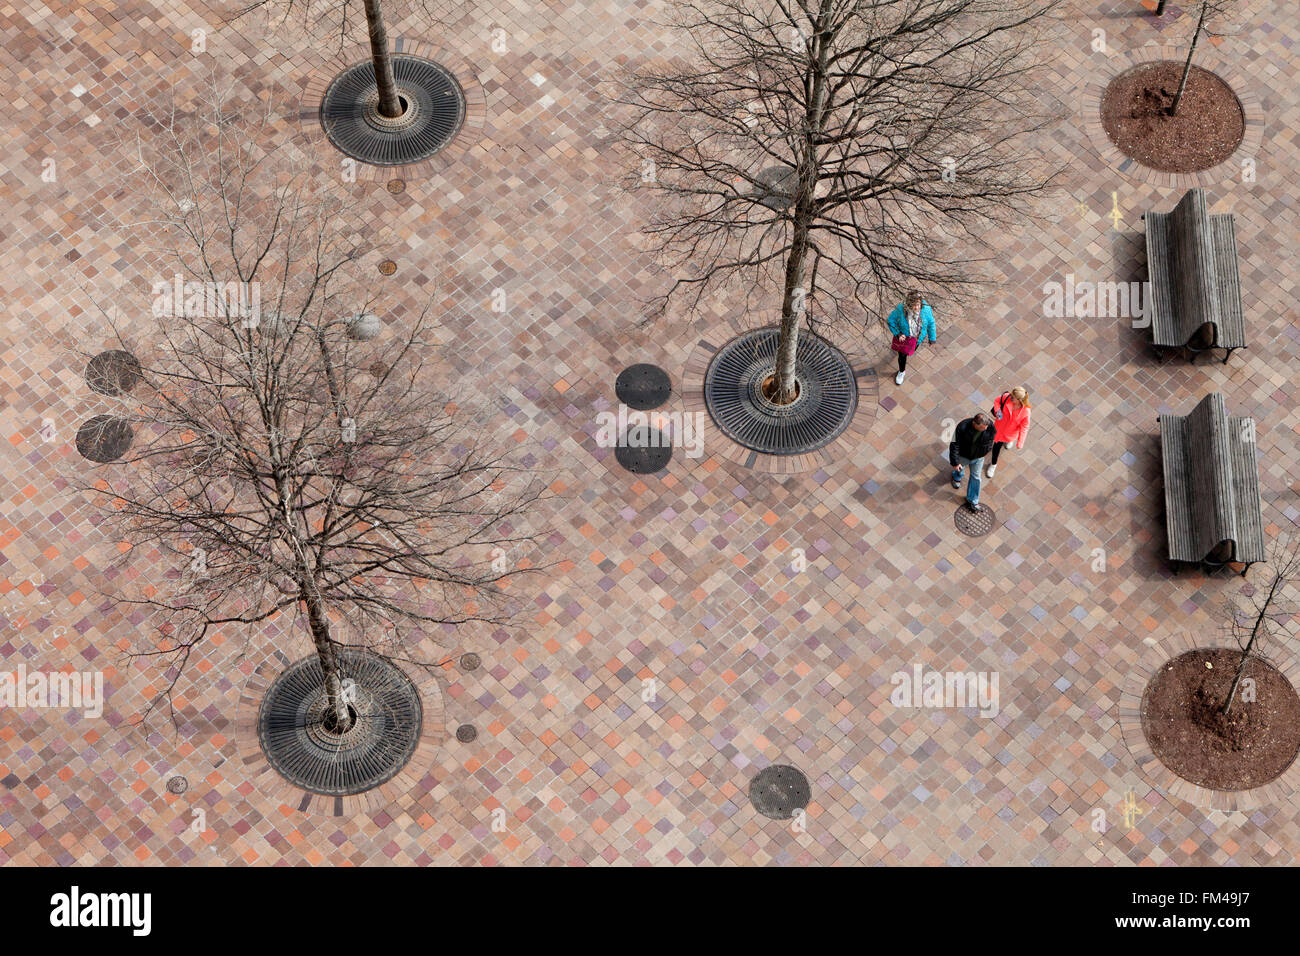 Uccelli-eye di pedoni camminando sul marciapiede urbano rivestita con piastrelle - Washington DC, Stati Uniti d'America Foto Stock